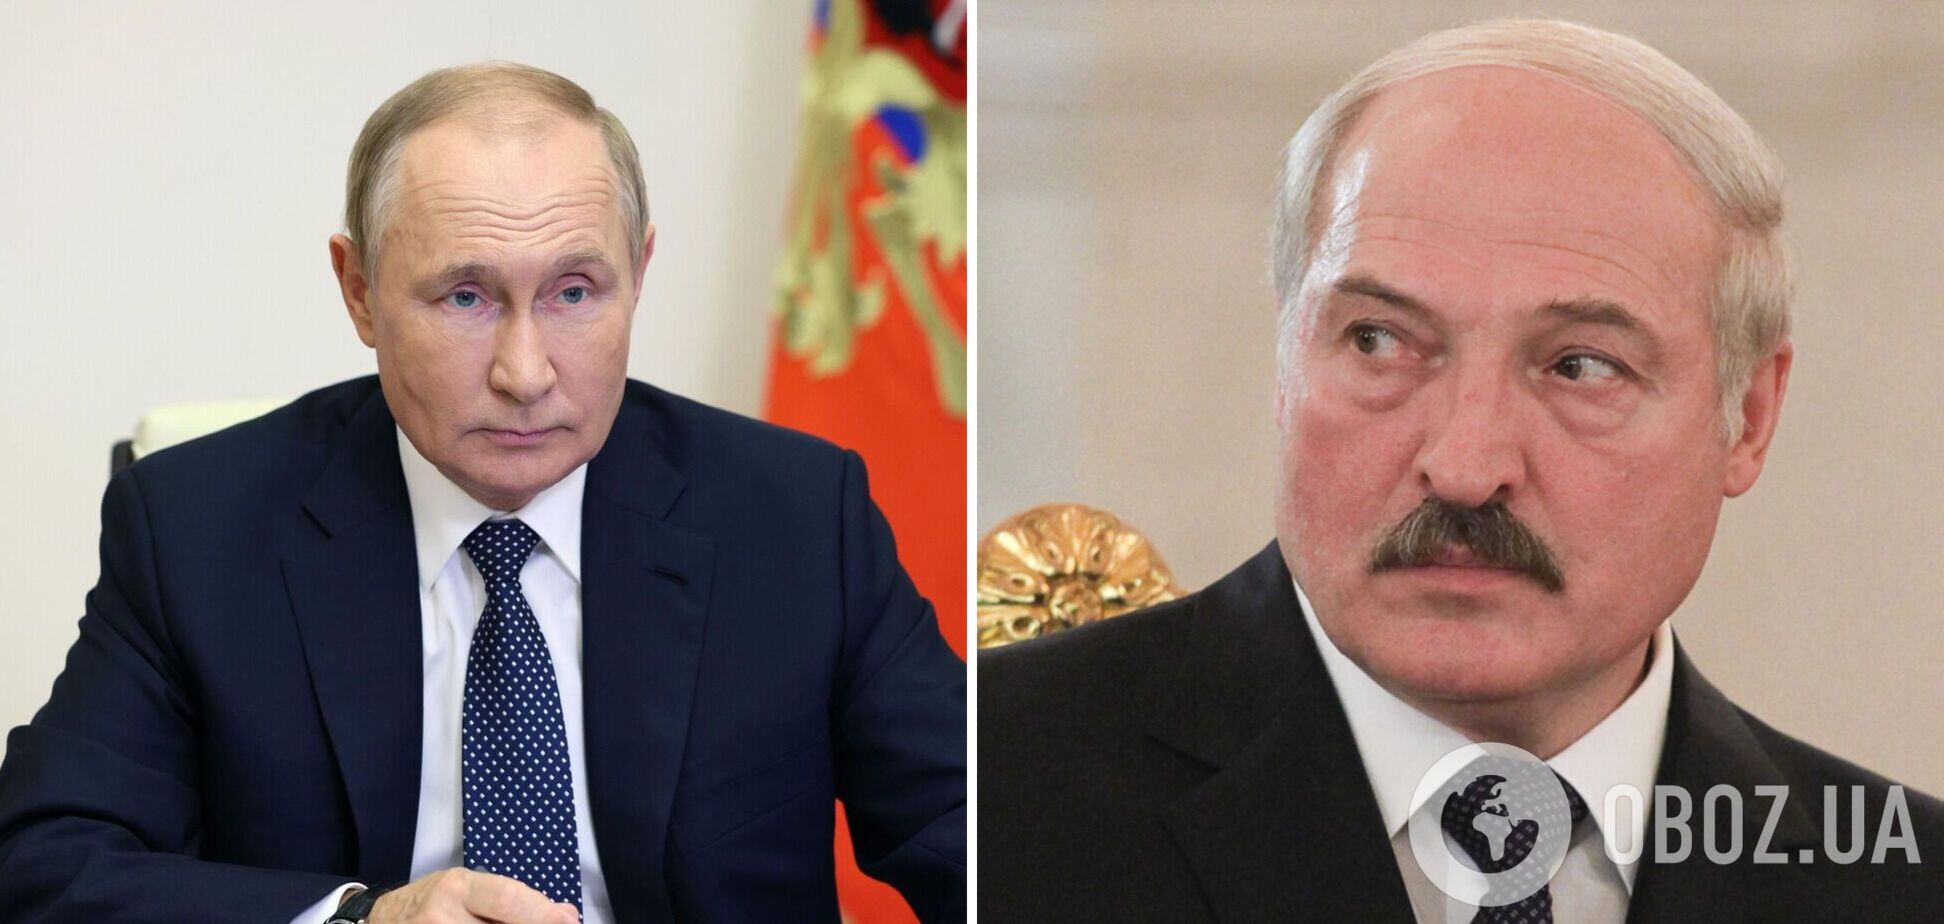 Белорусские агенты в рядах российских ЧВК собирают разведданные, Лукашенко готовит почву для предательства Путину – рассказ пленного наемника